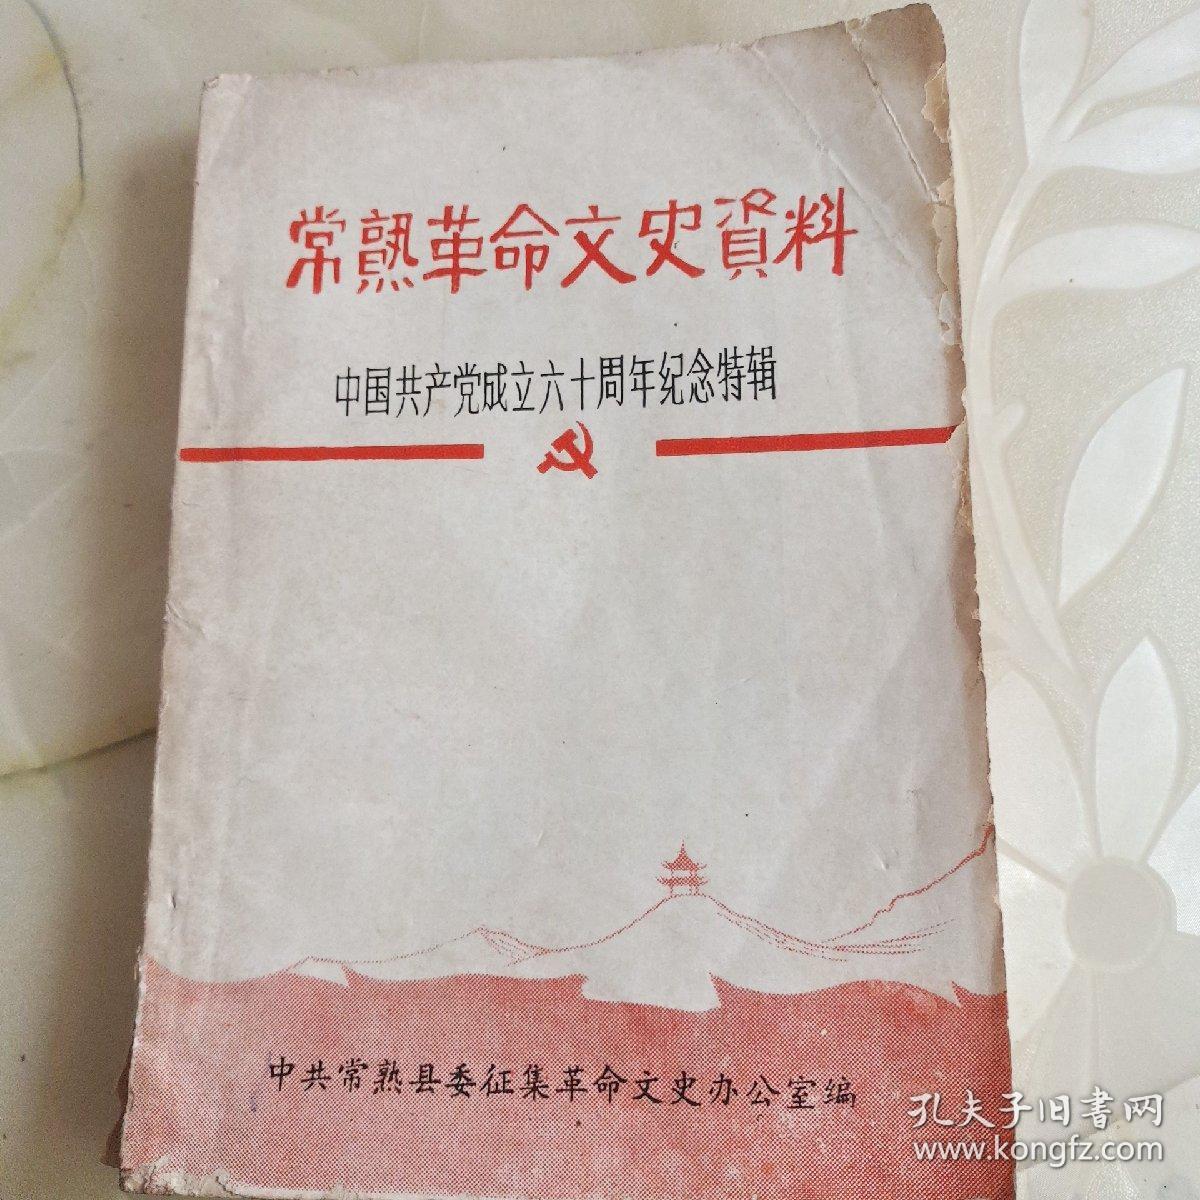 常熟革命文史资料 中国共产党成立六十周年纪念特辑